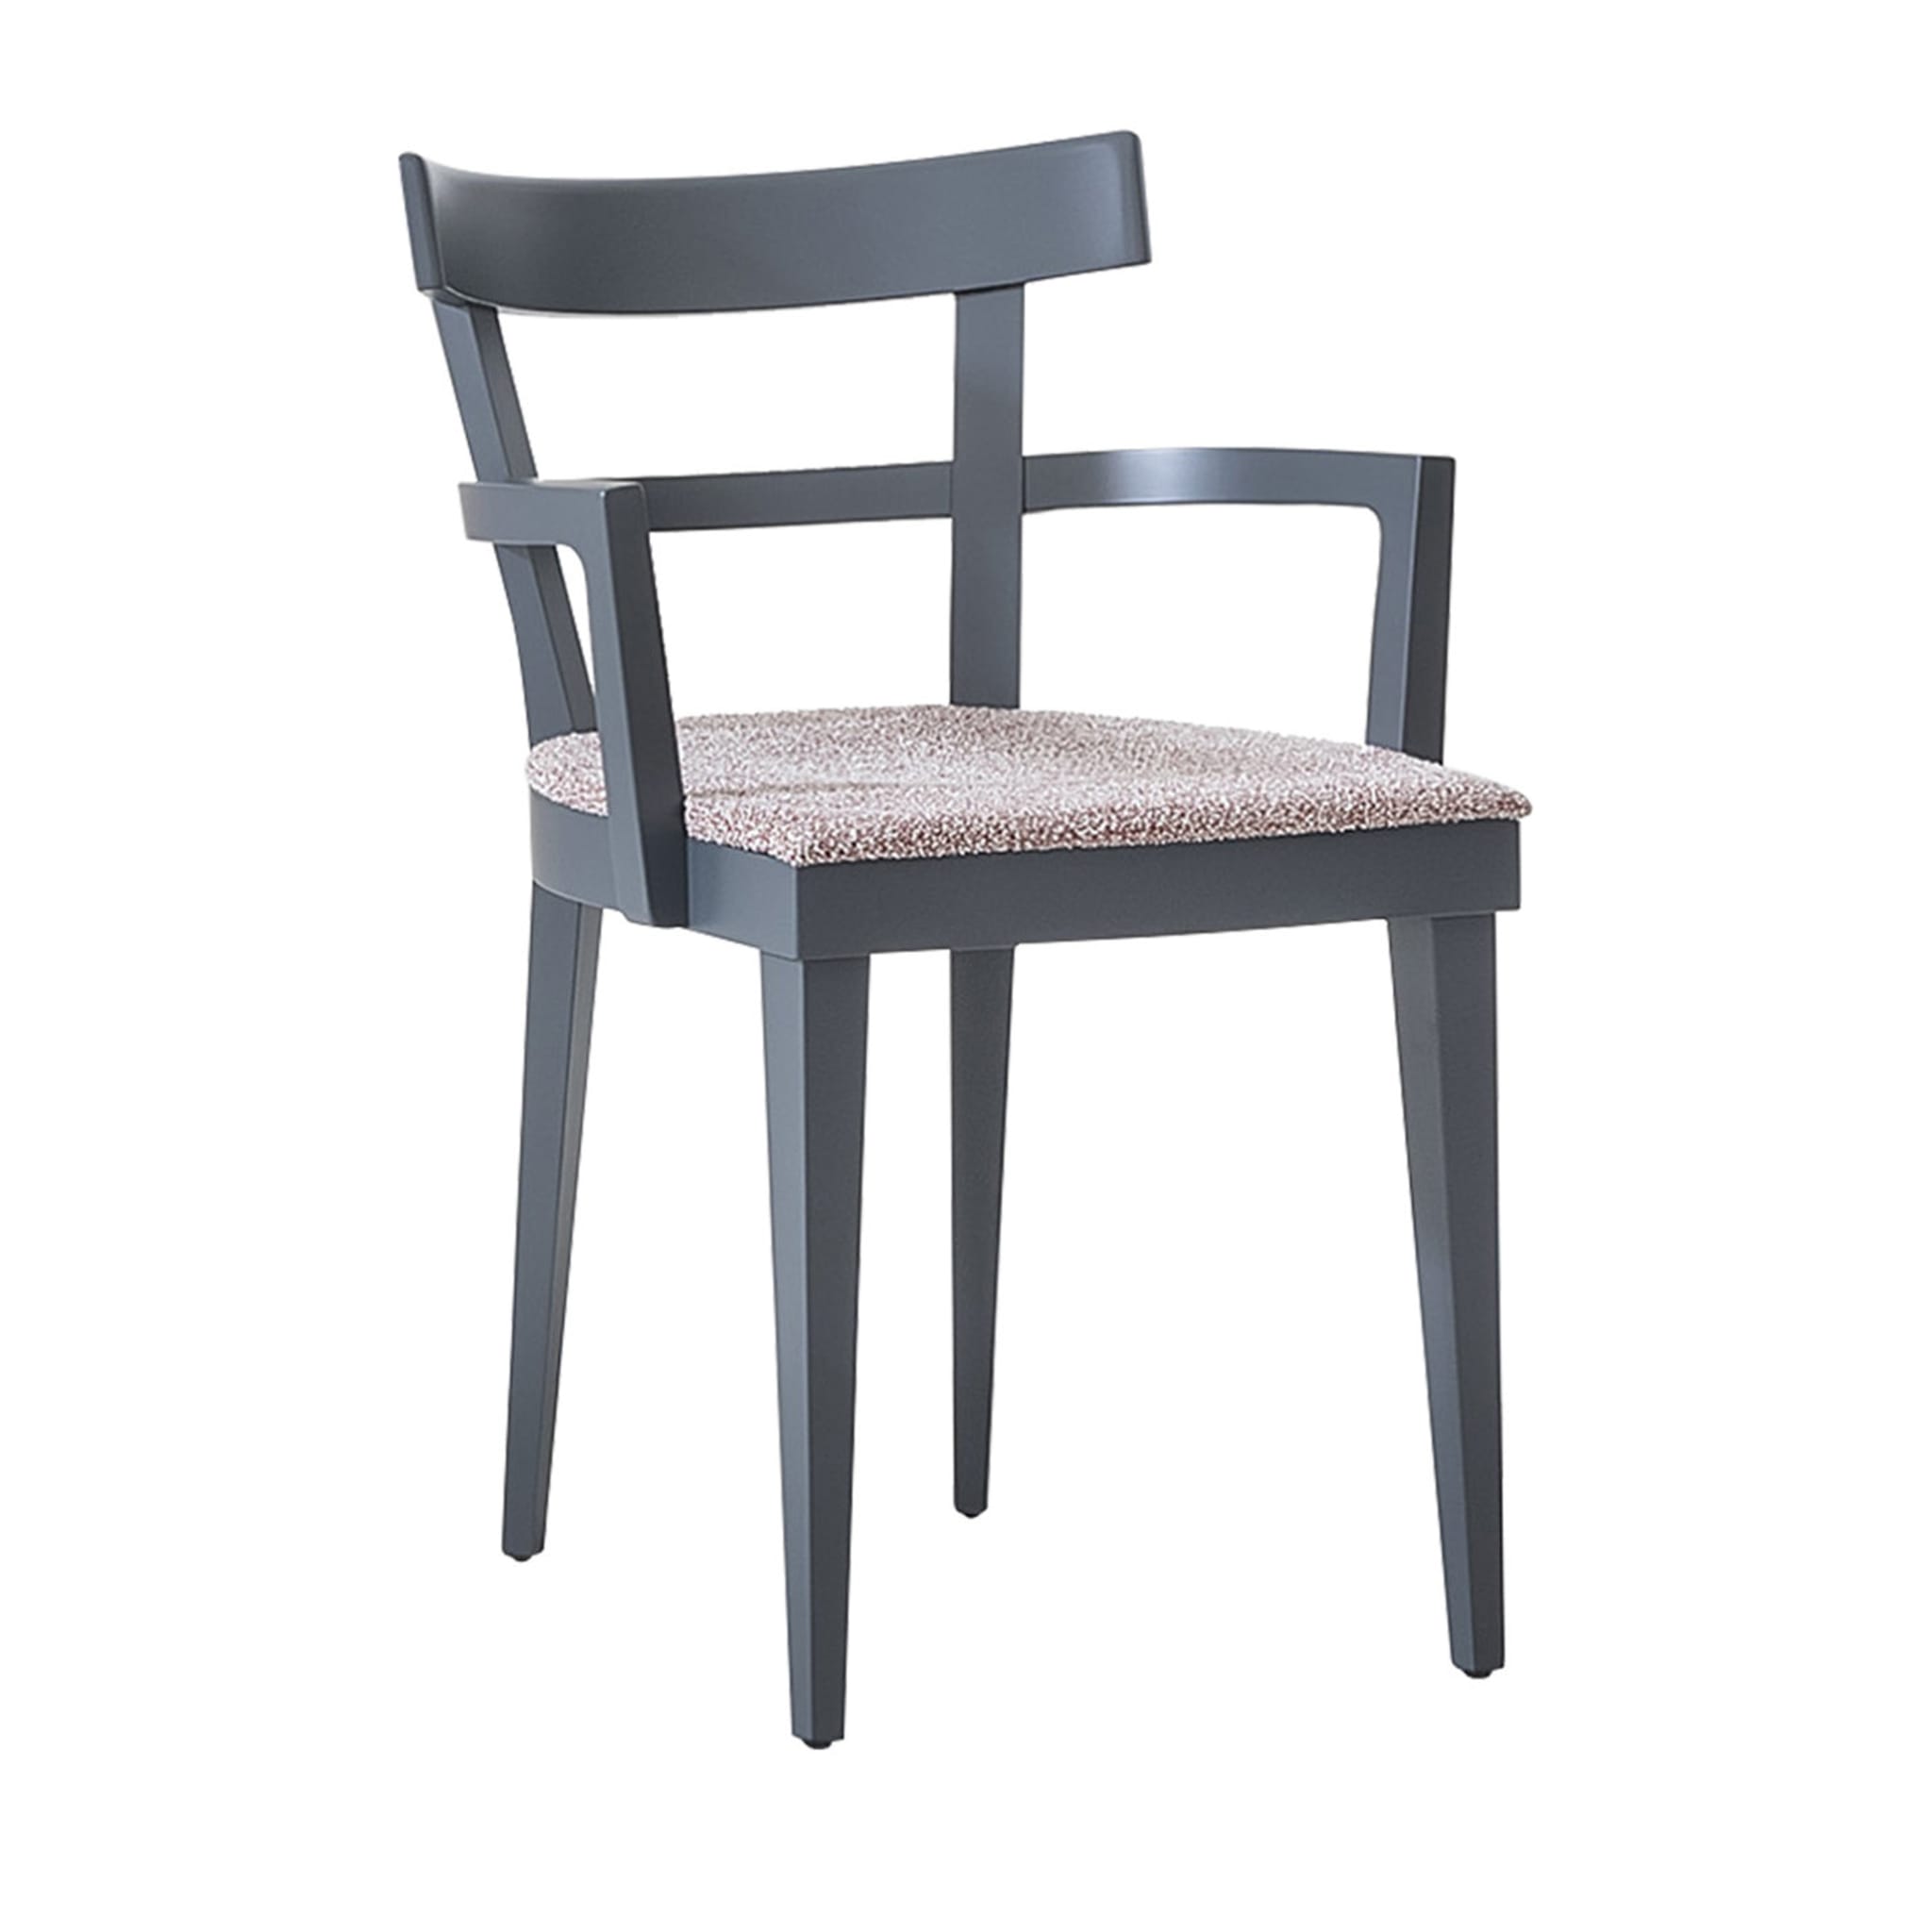 Cafè 461/l Grauer Stuhl von Werther Toffoloni - Hauptansicht